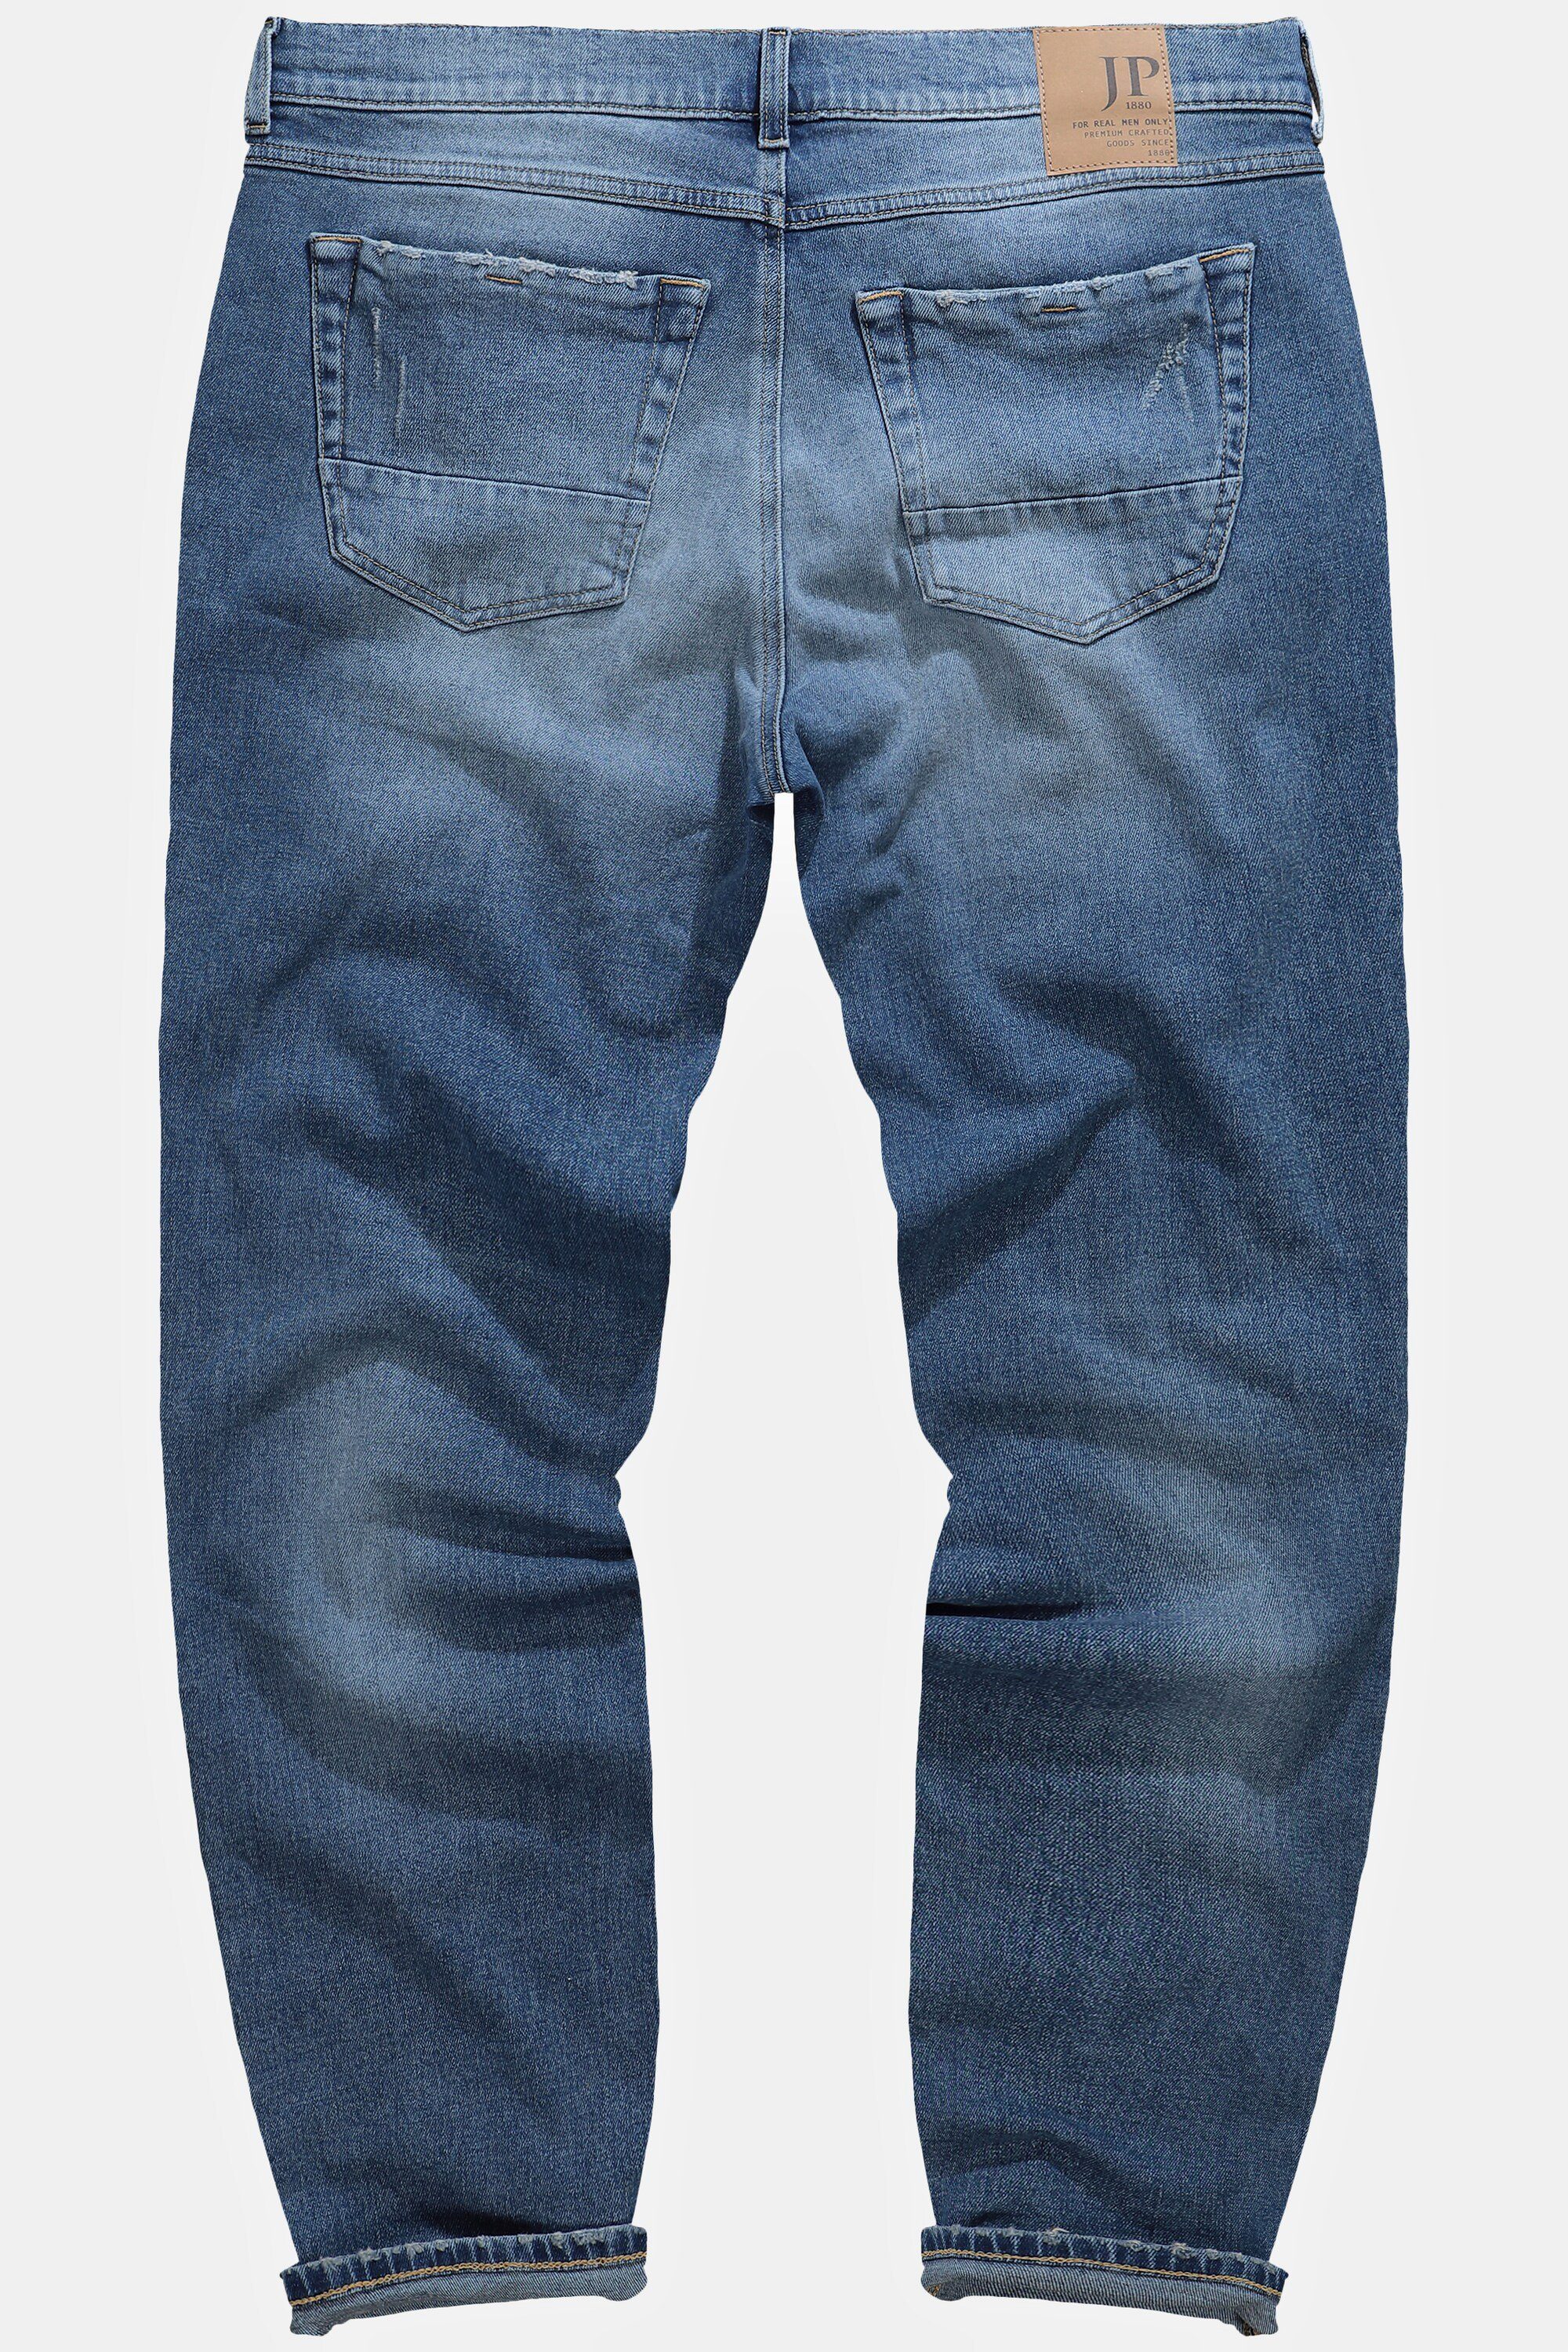 JP1880 5-Pocket-Jeans Jeans FLEXNAMIC® Denim bleached Destroy-Look